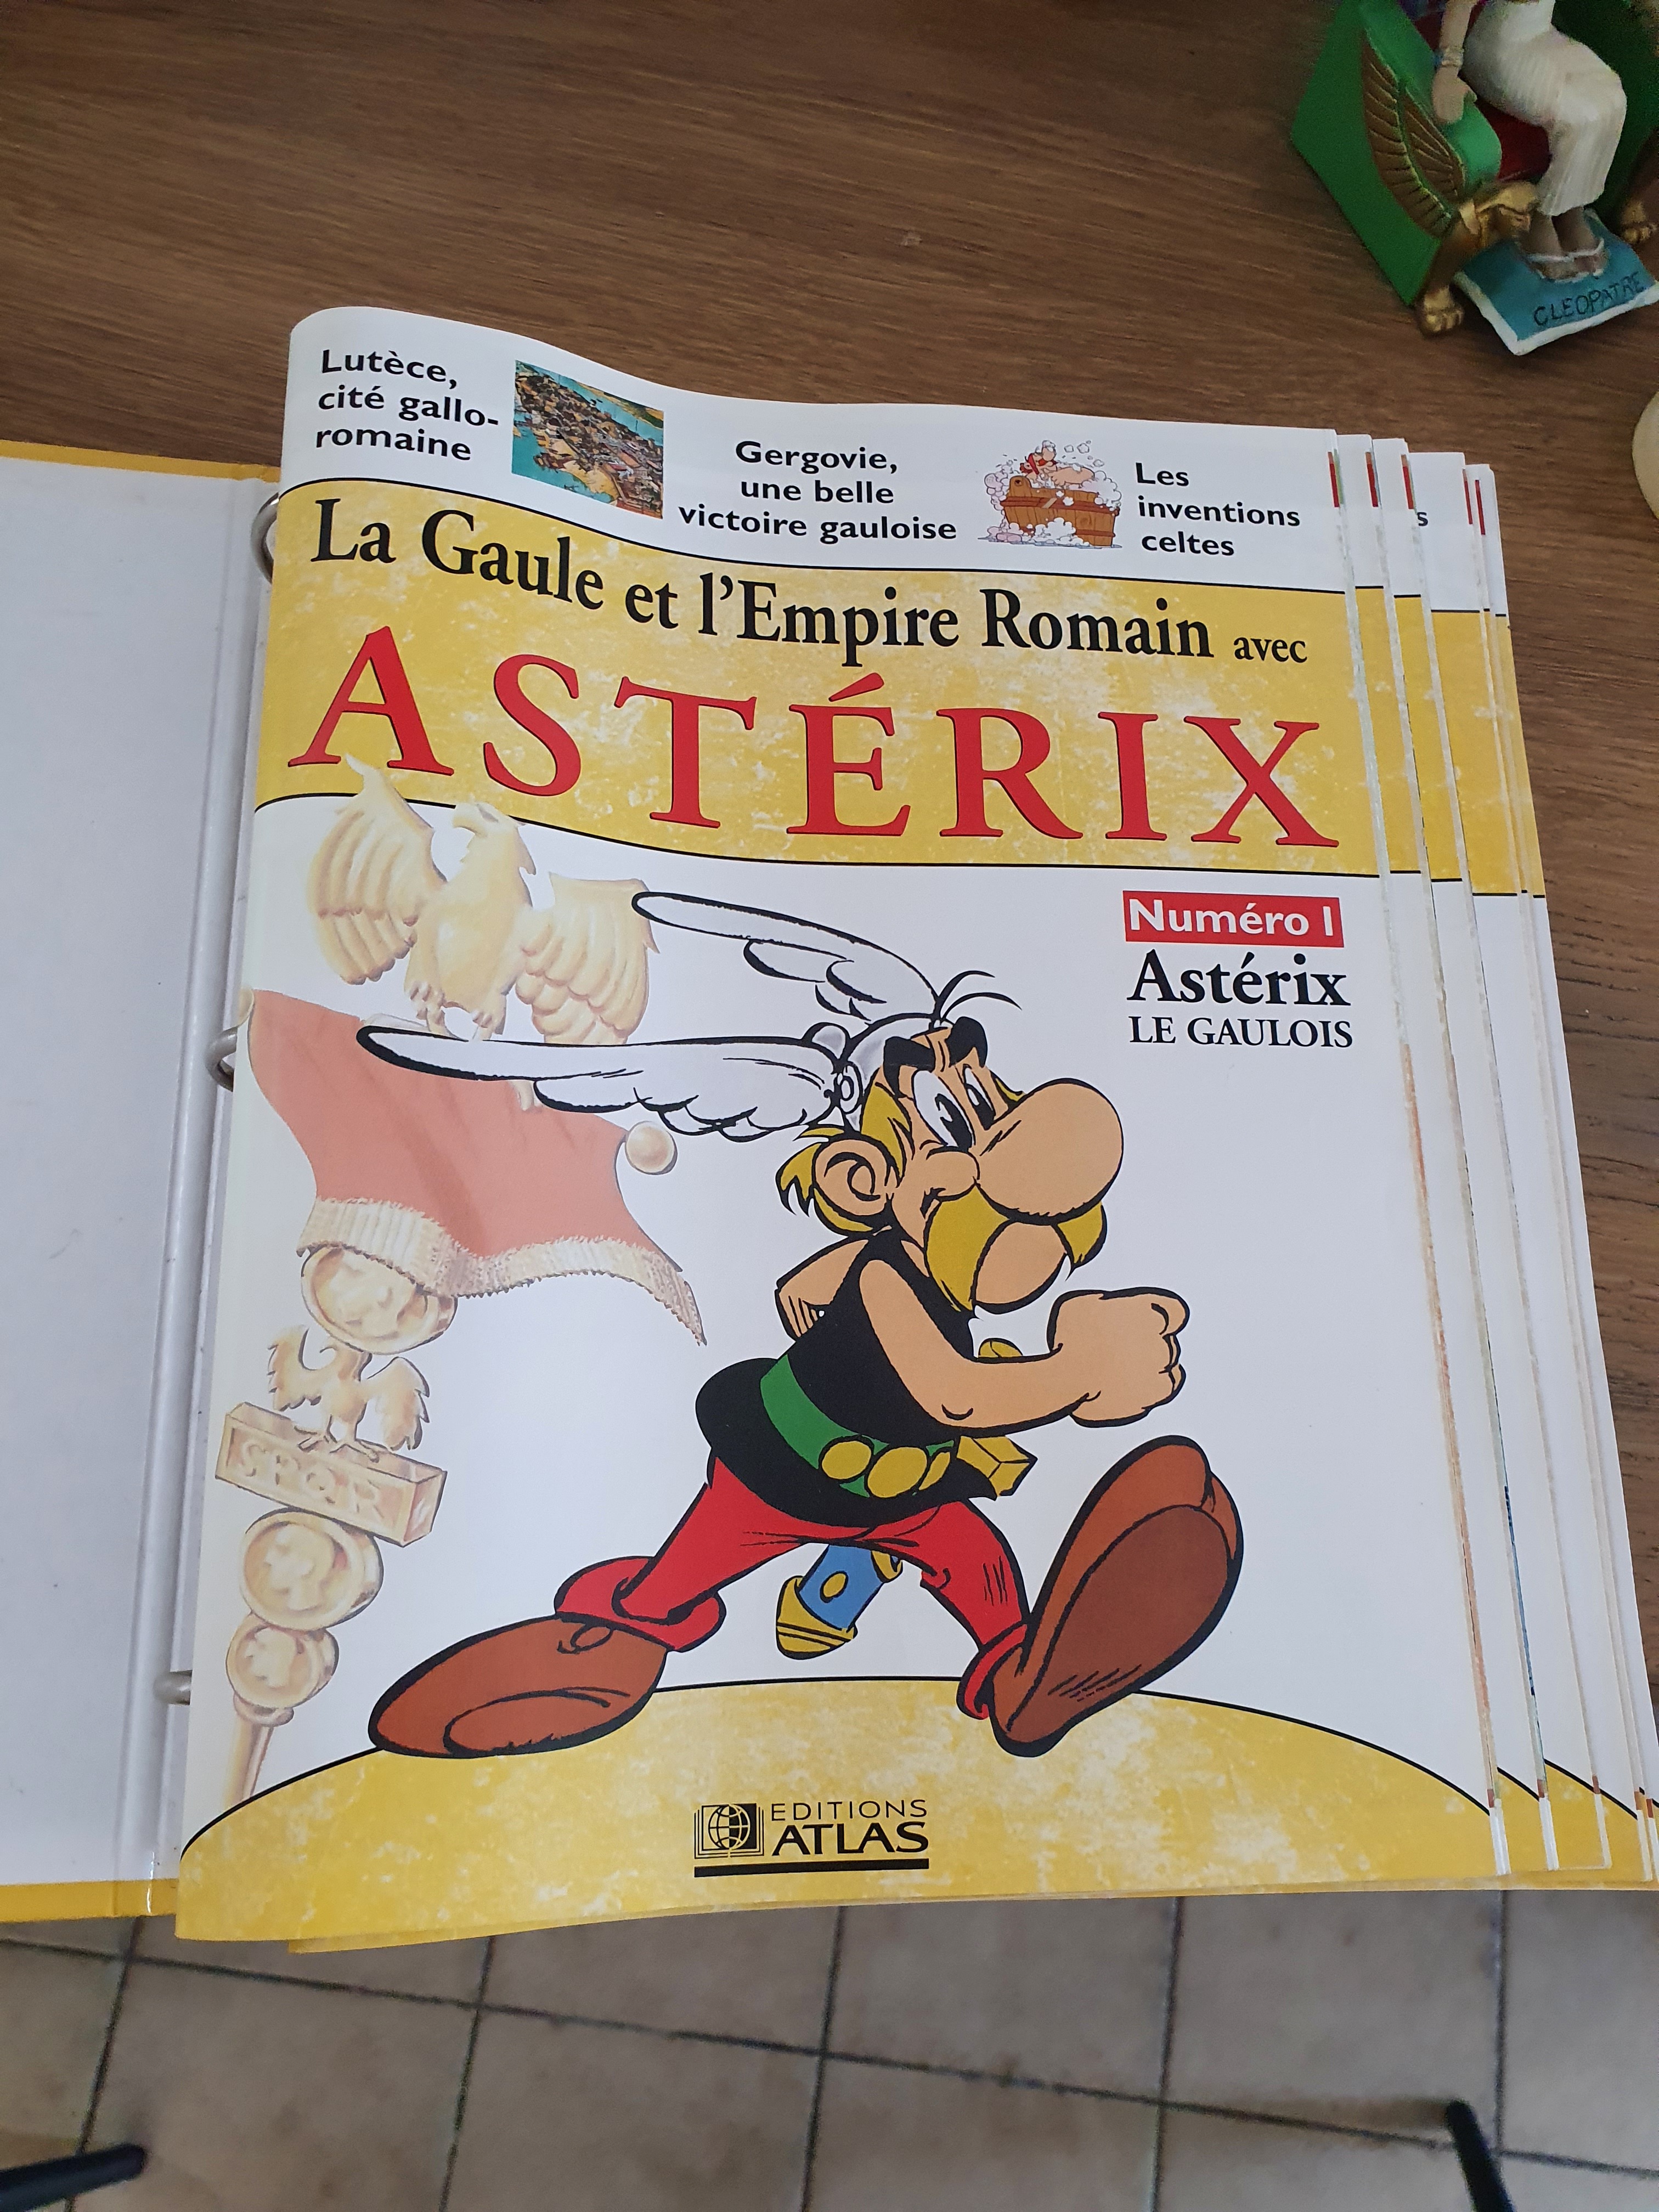 La Gaule et l'empire Romain avec Asterix S4kk